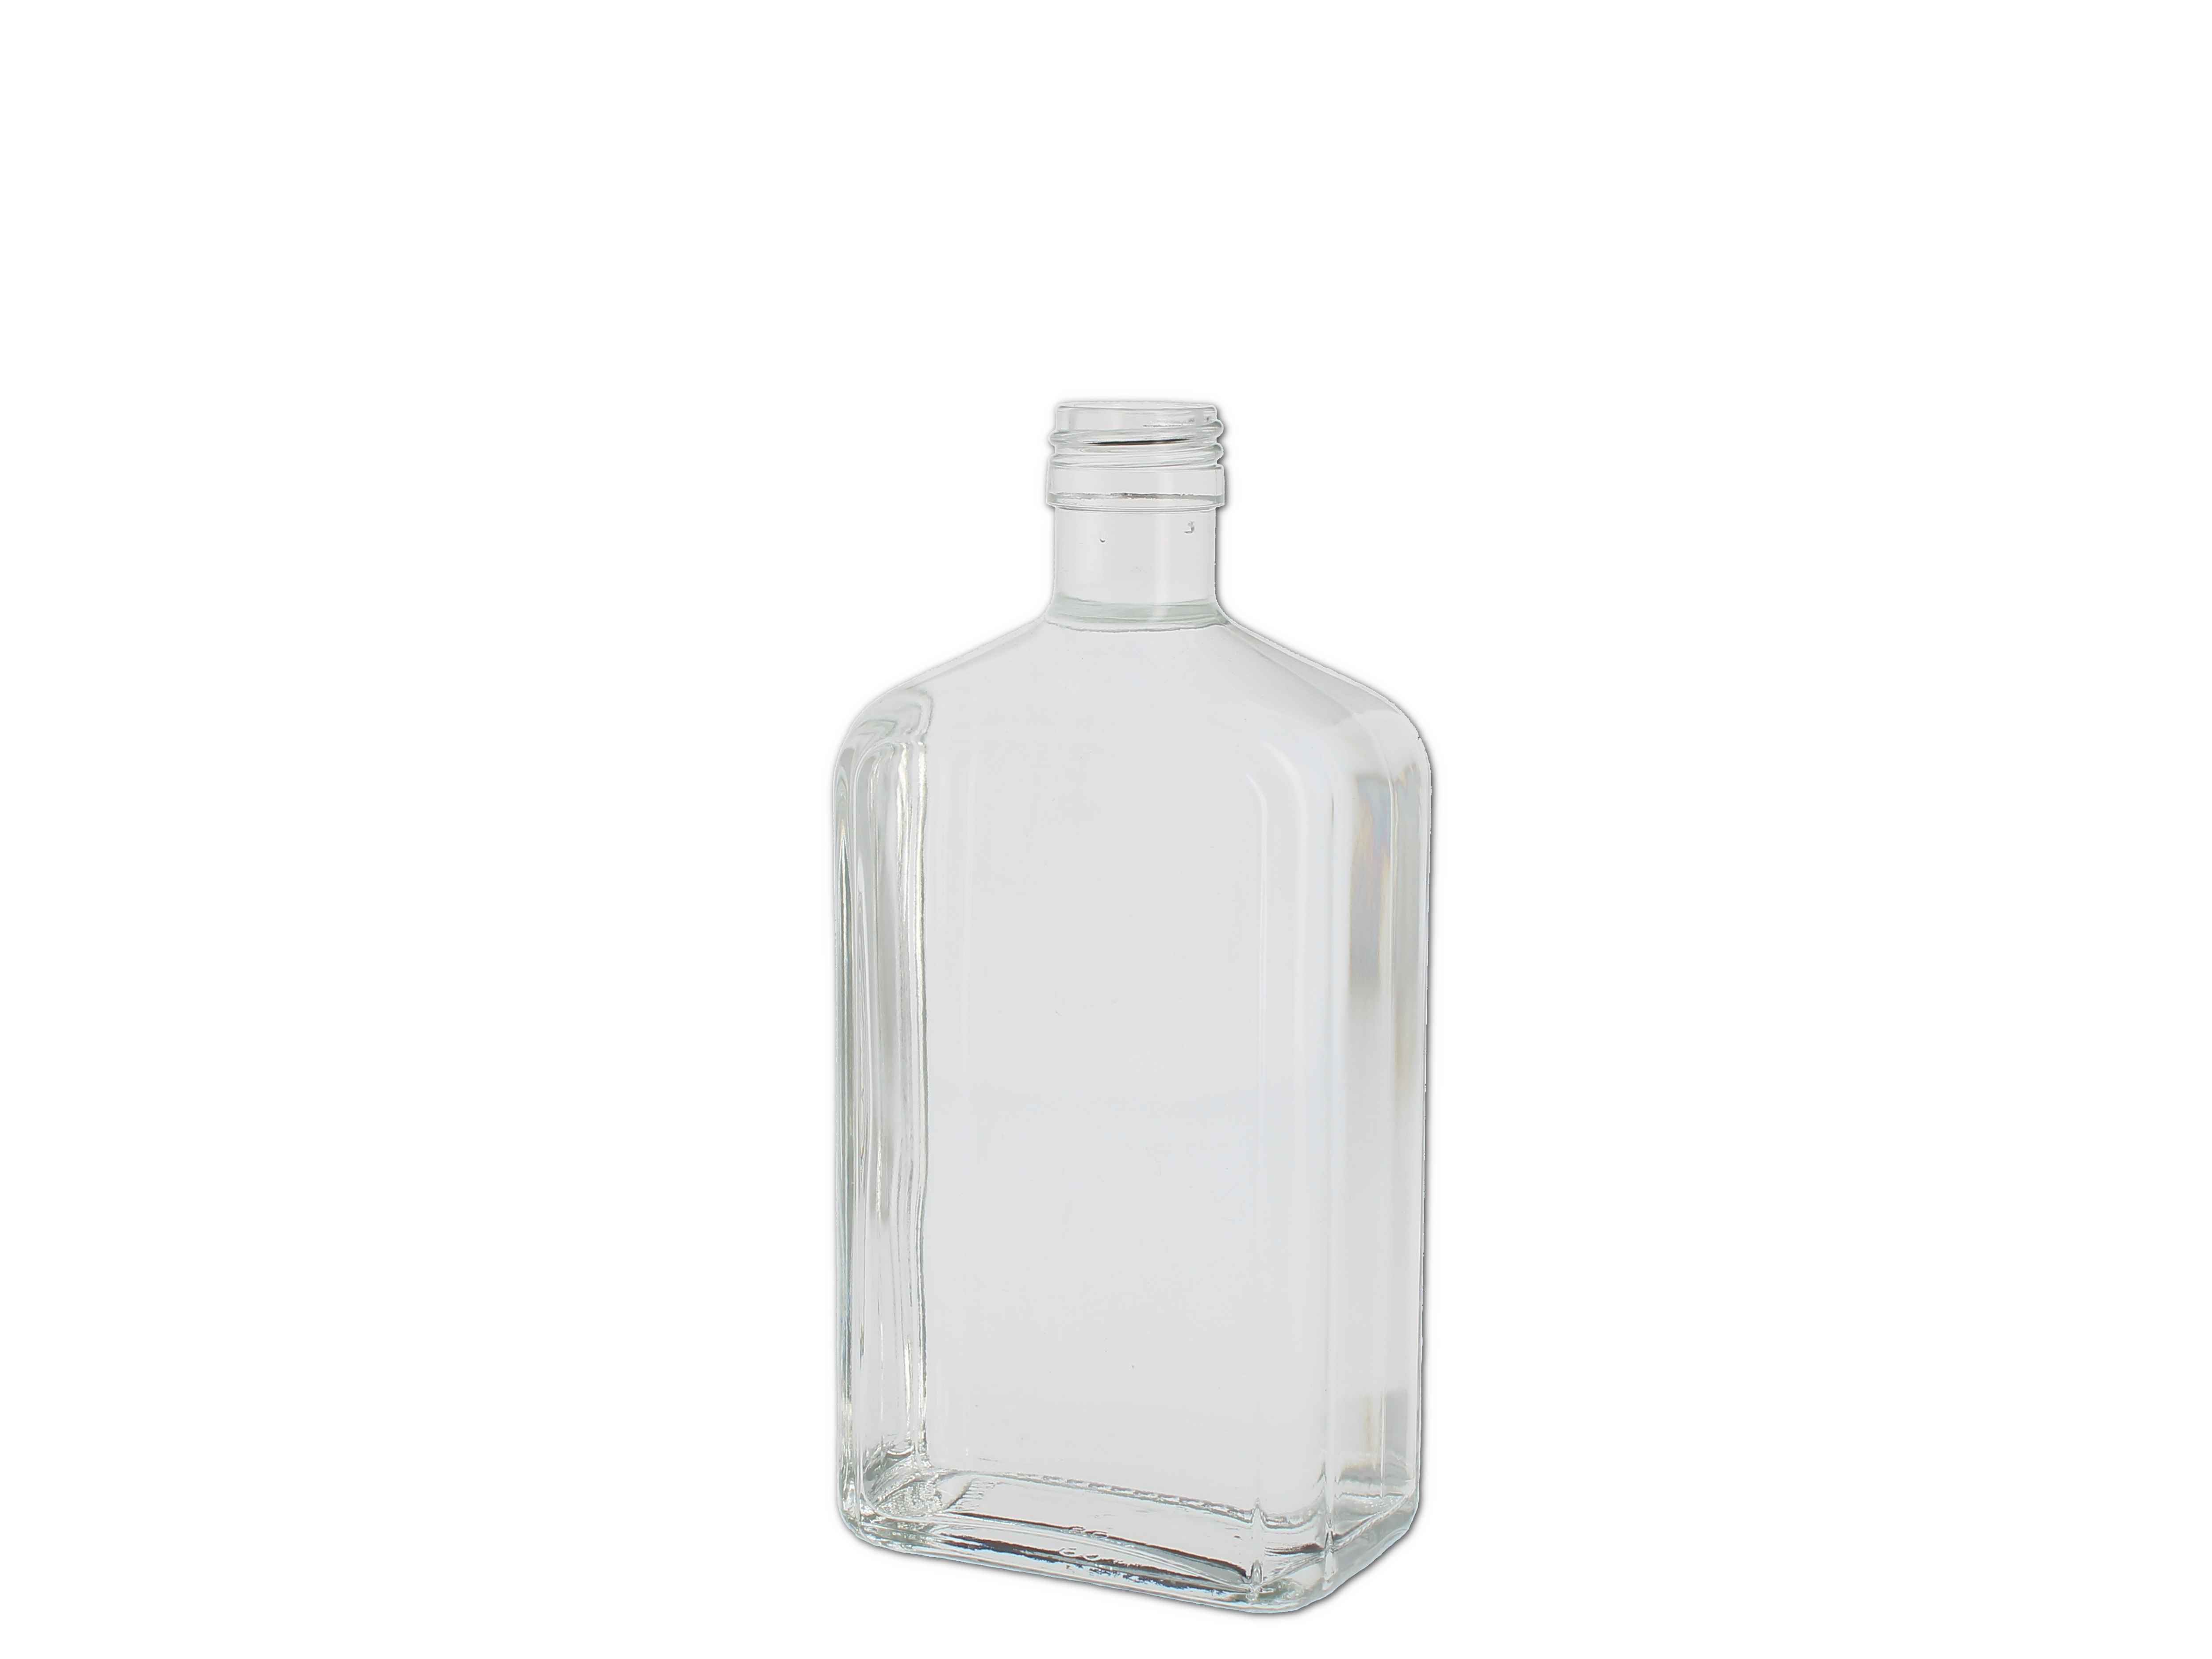    Formflasche weiß, Typ 318 (91318) - PP28 - 500ml